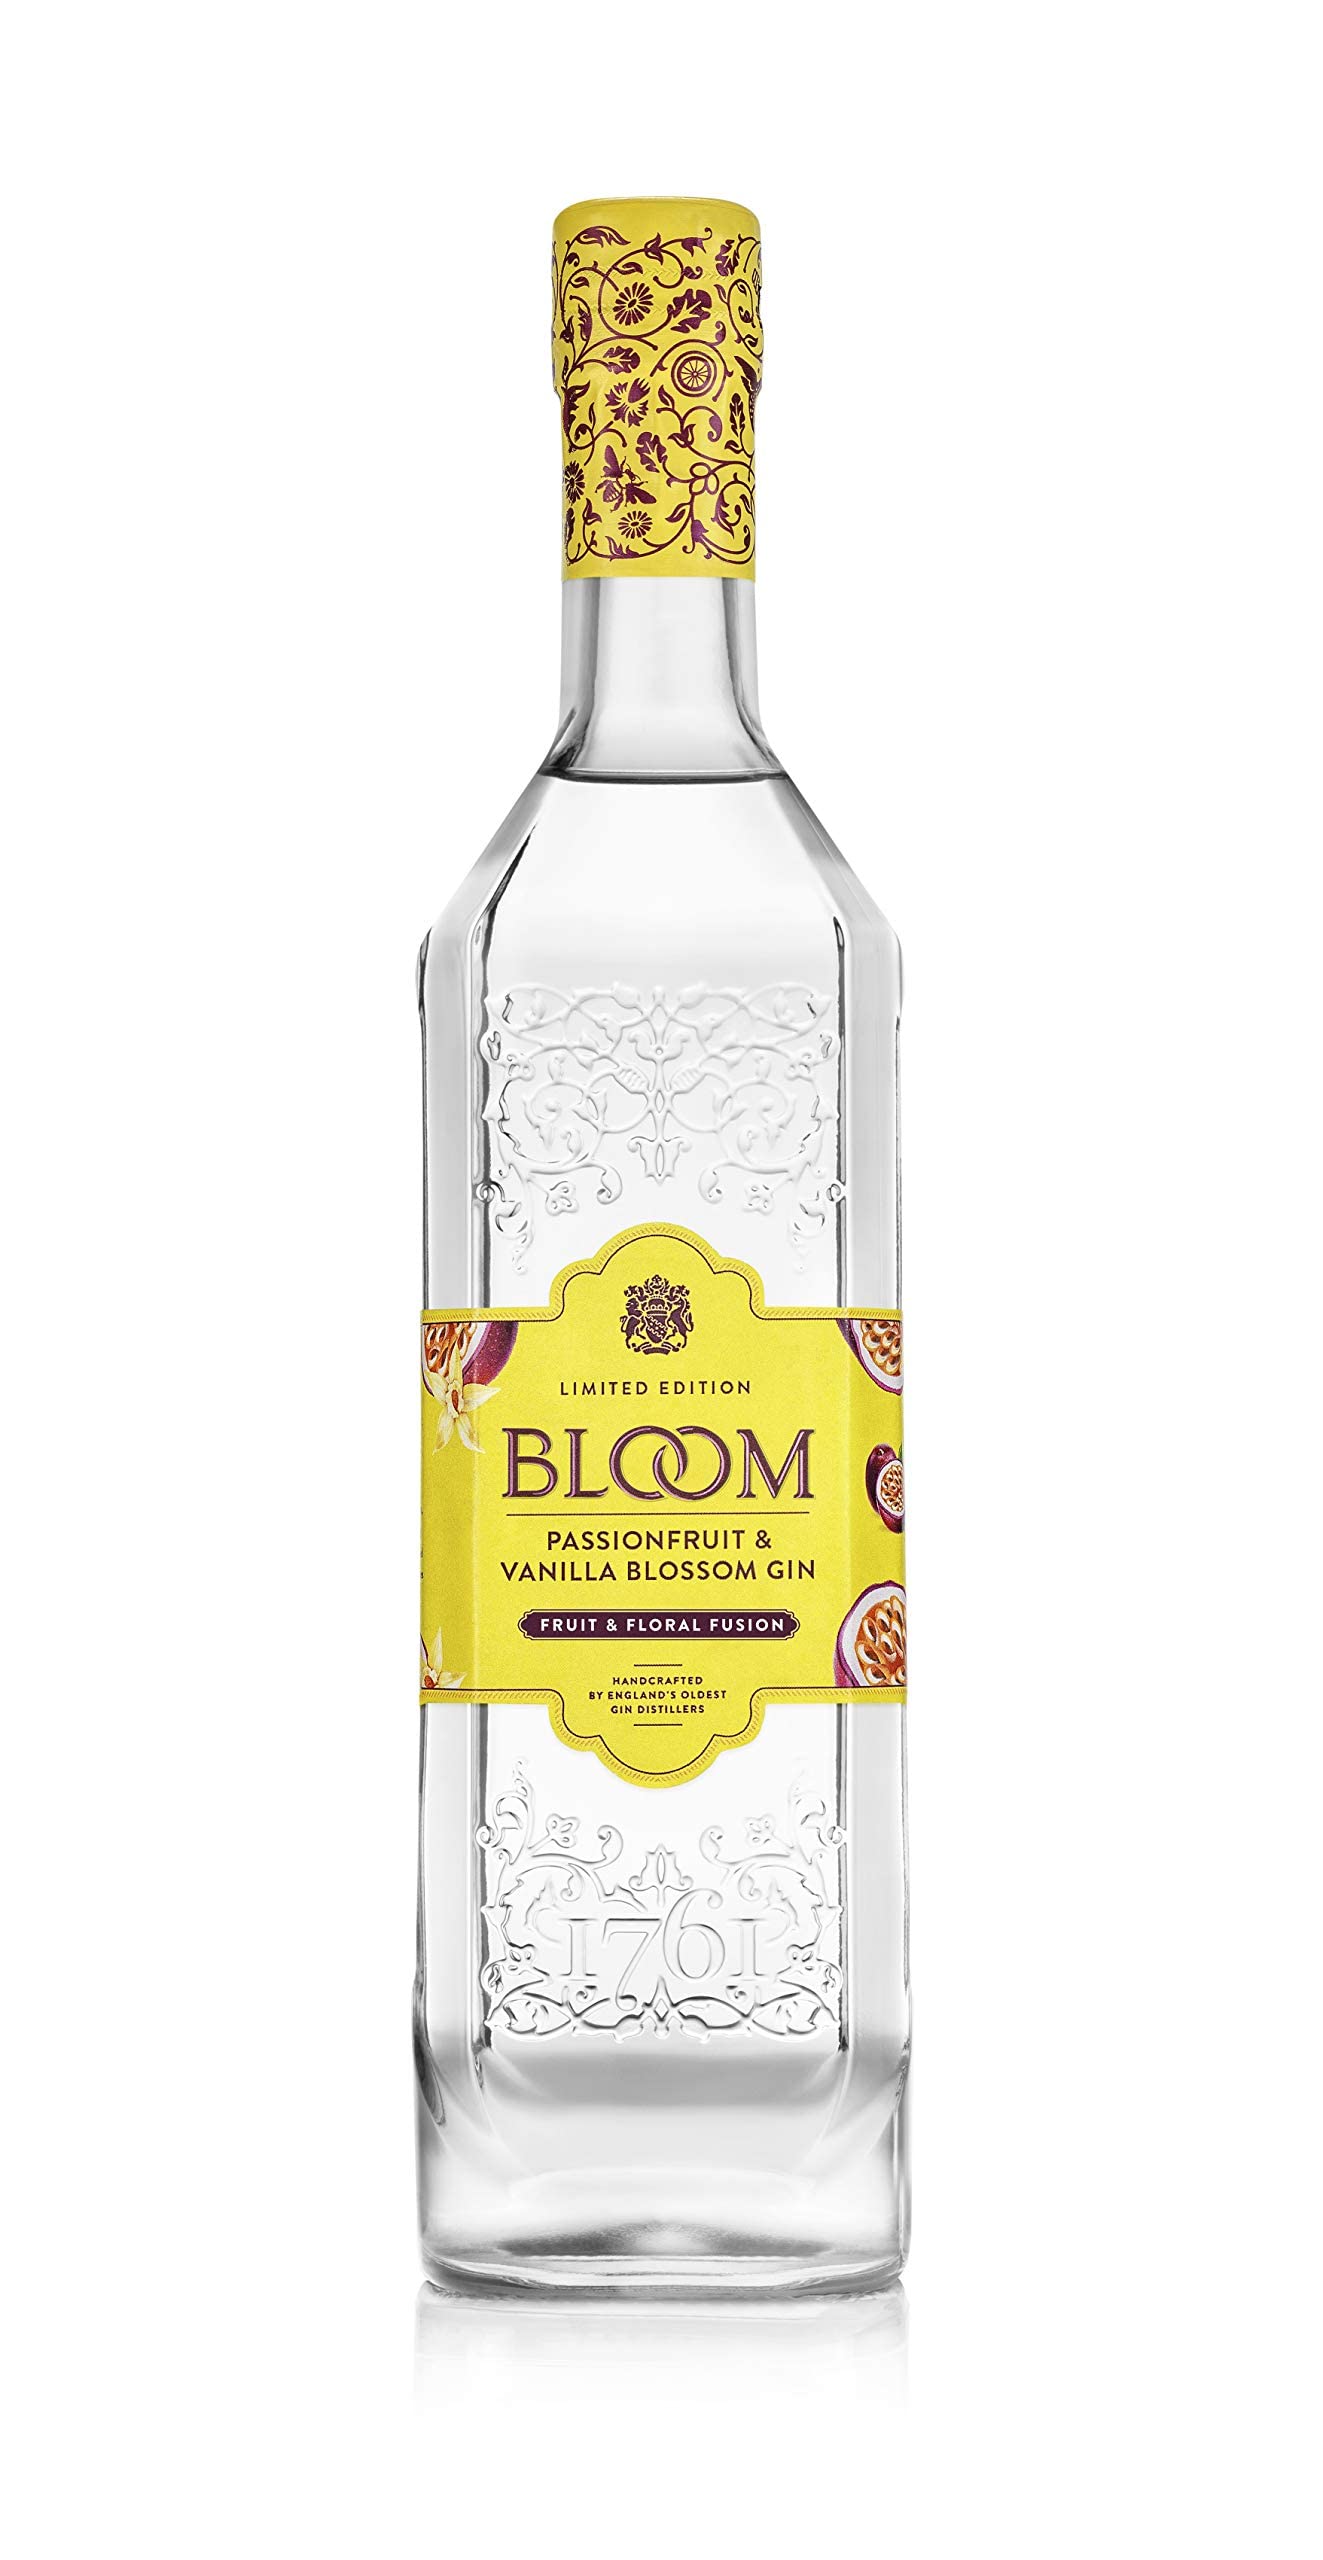 BLOOM Passionfruit Vanilla Blossom Gin - Ein fruchtig, frischer London Dry Gin mit cremigen Vanilleblüten und erfrischender Passionsfrucht, kreiert von Joanne Moore (1 x 0.7l)